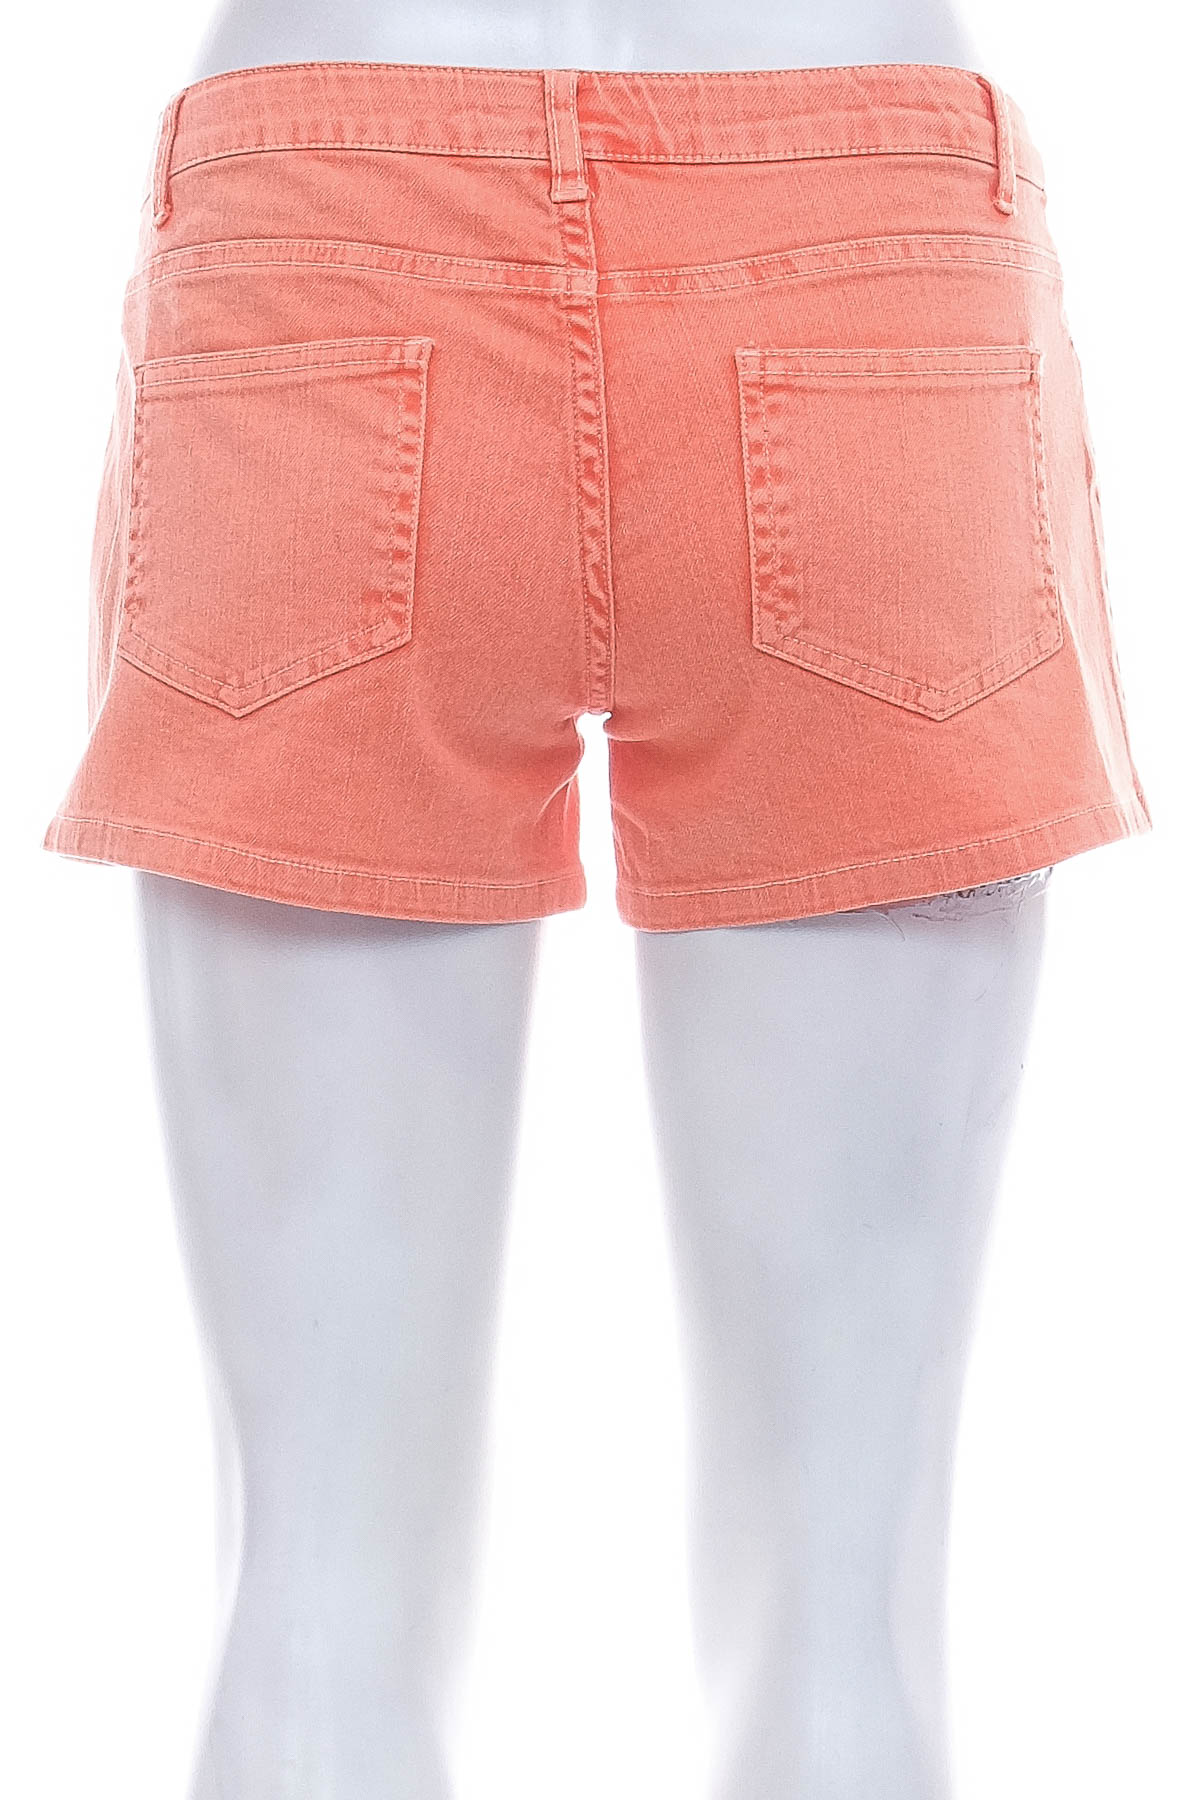 Female shorts - CKS - 1